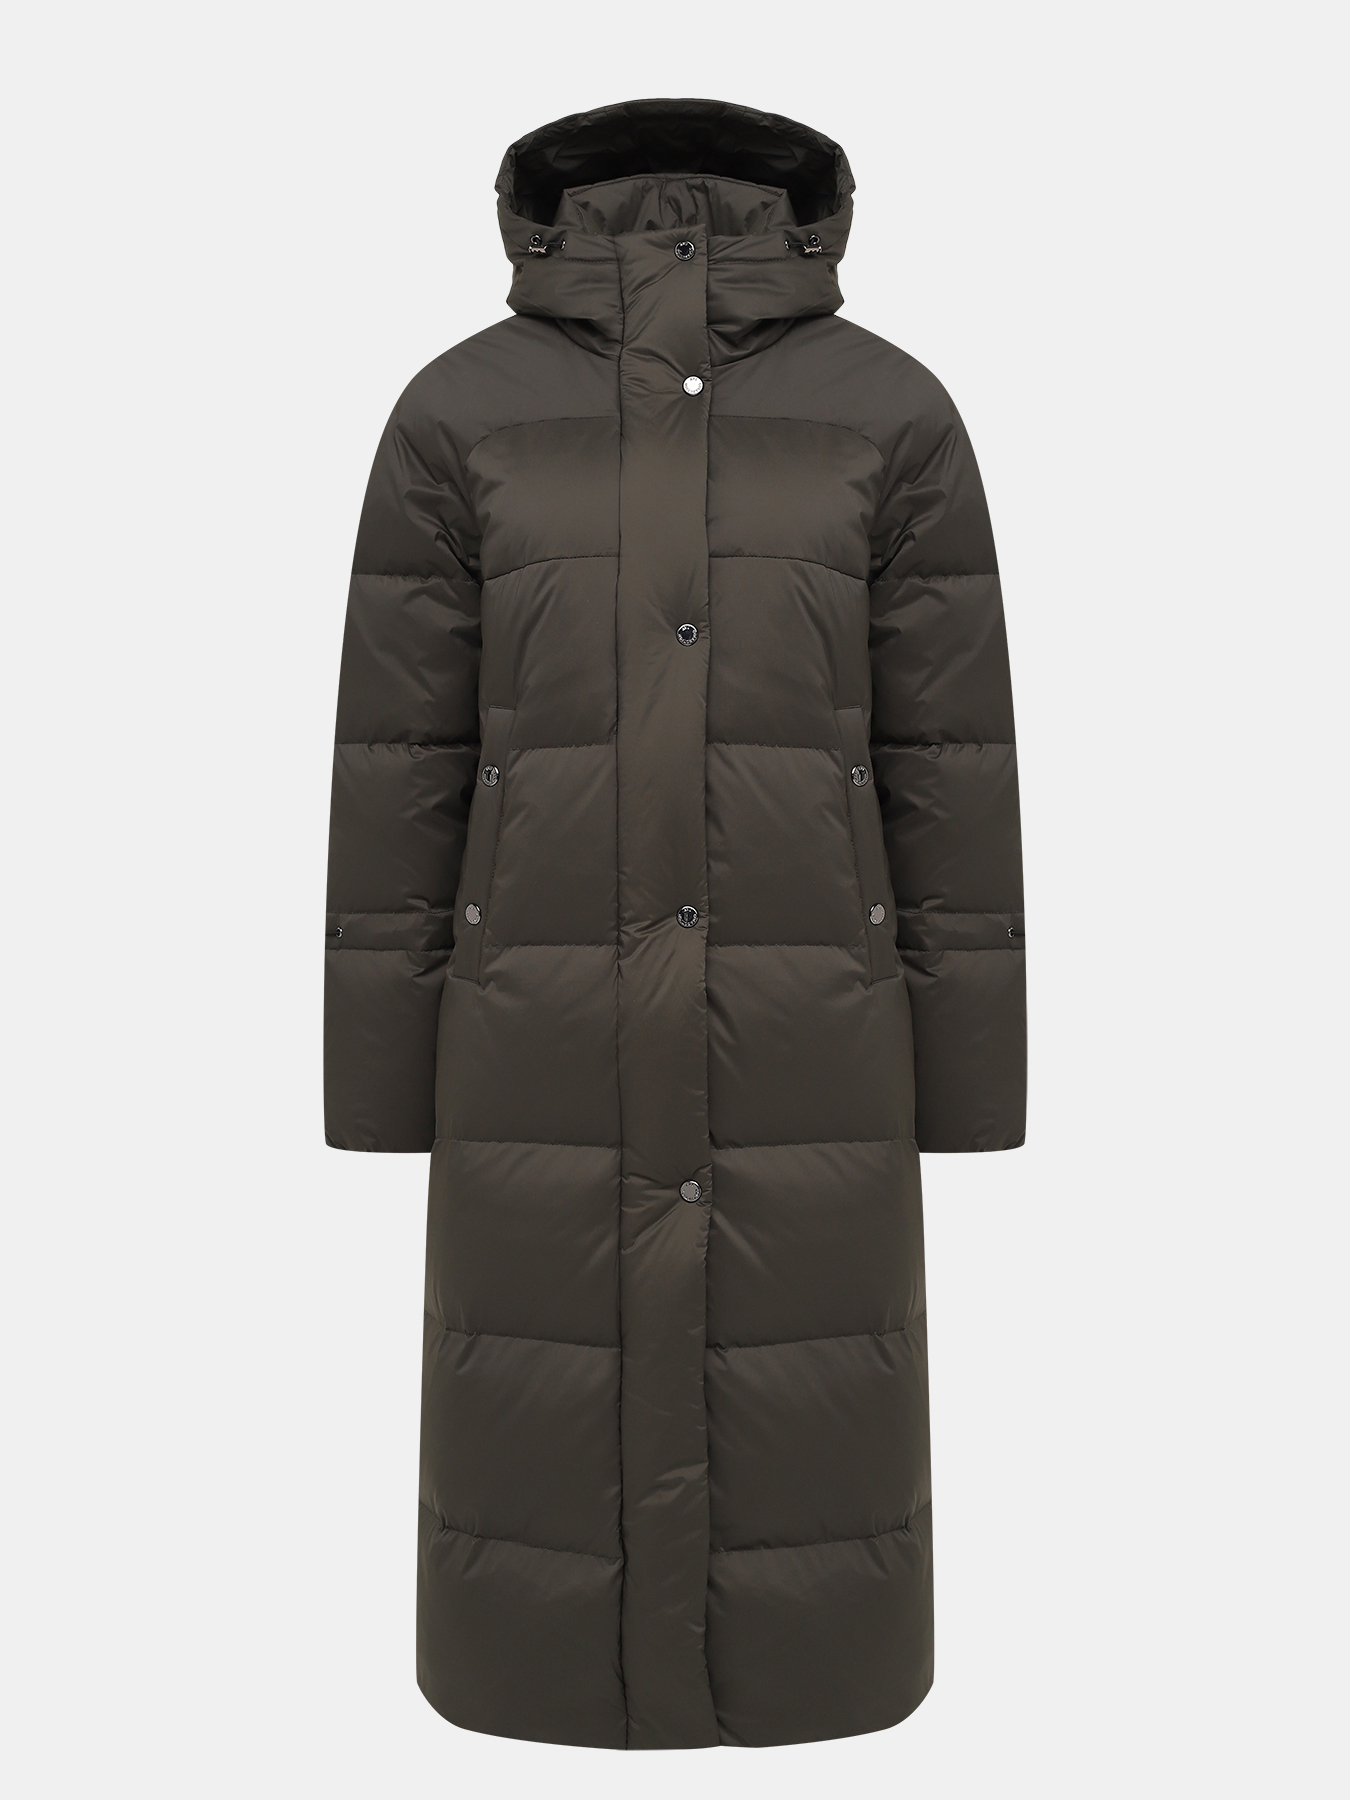 Пальто зимнее AVI 433638-021, цвет хаки, размер 46